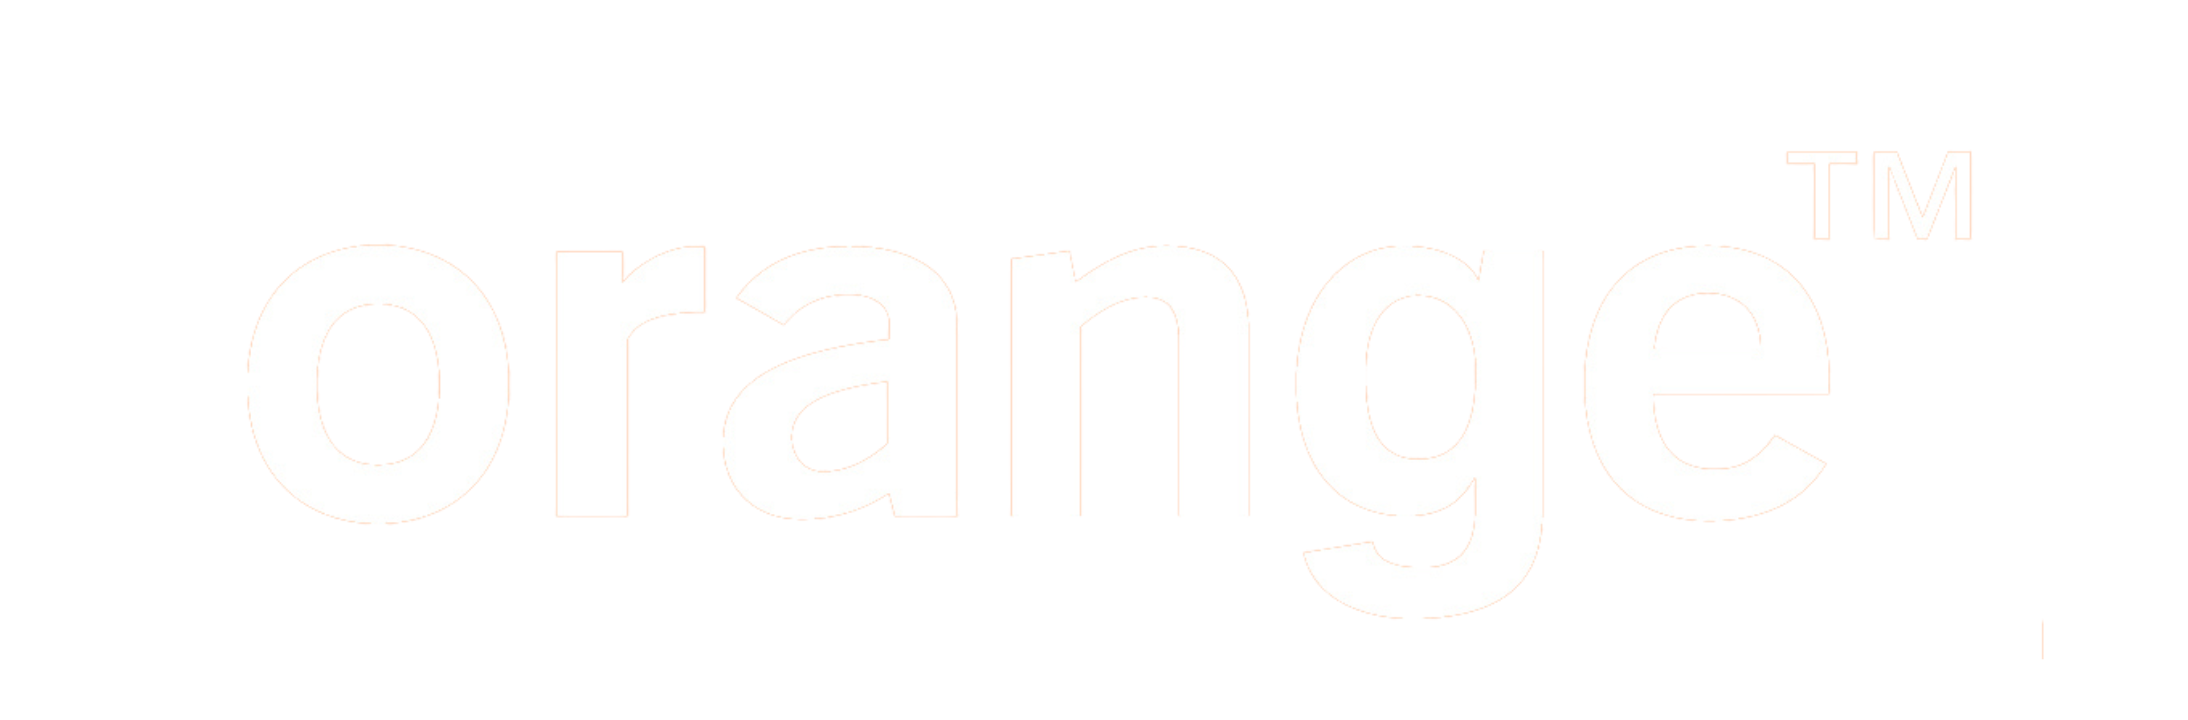 Logo des Telekommunikationskonzerns orange mit Markensymbol.